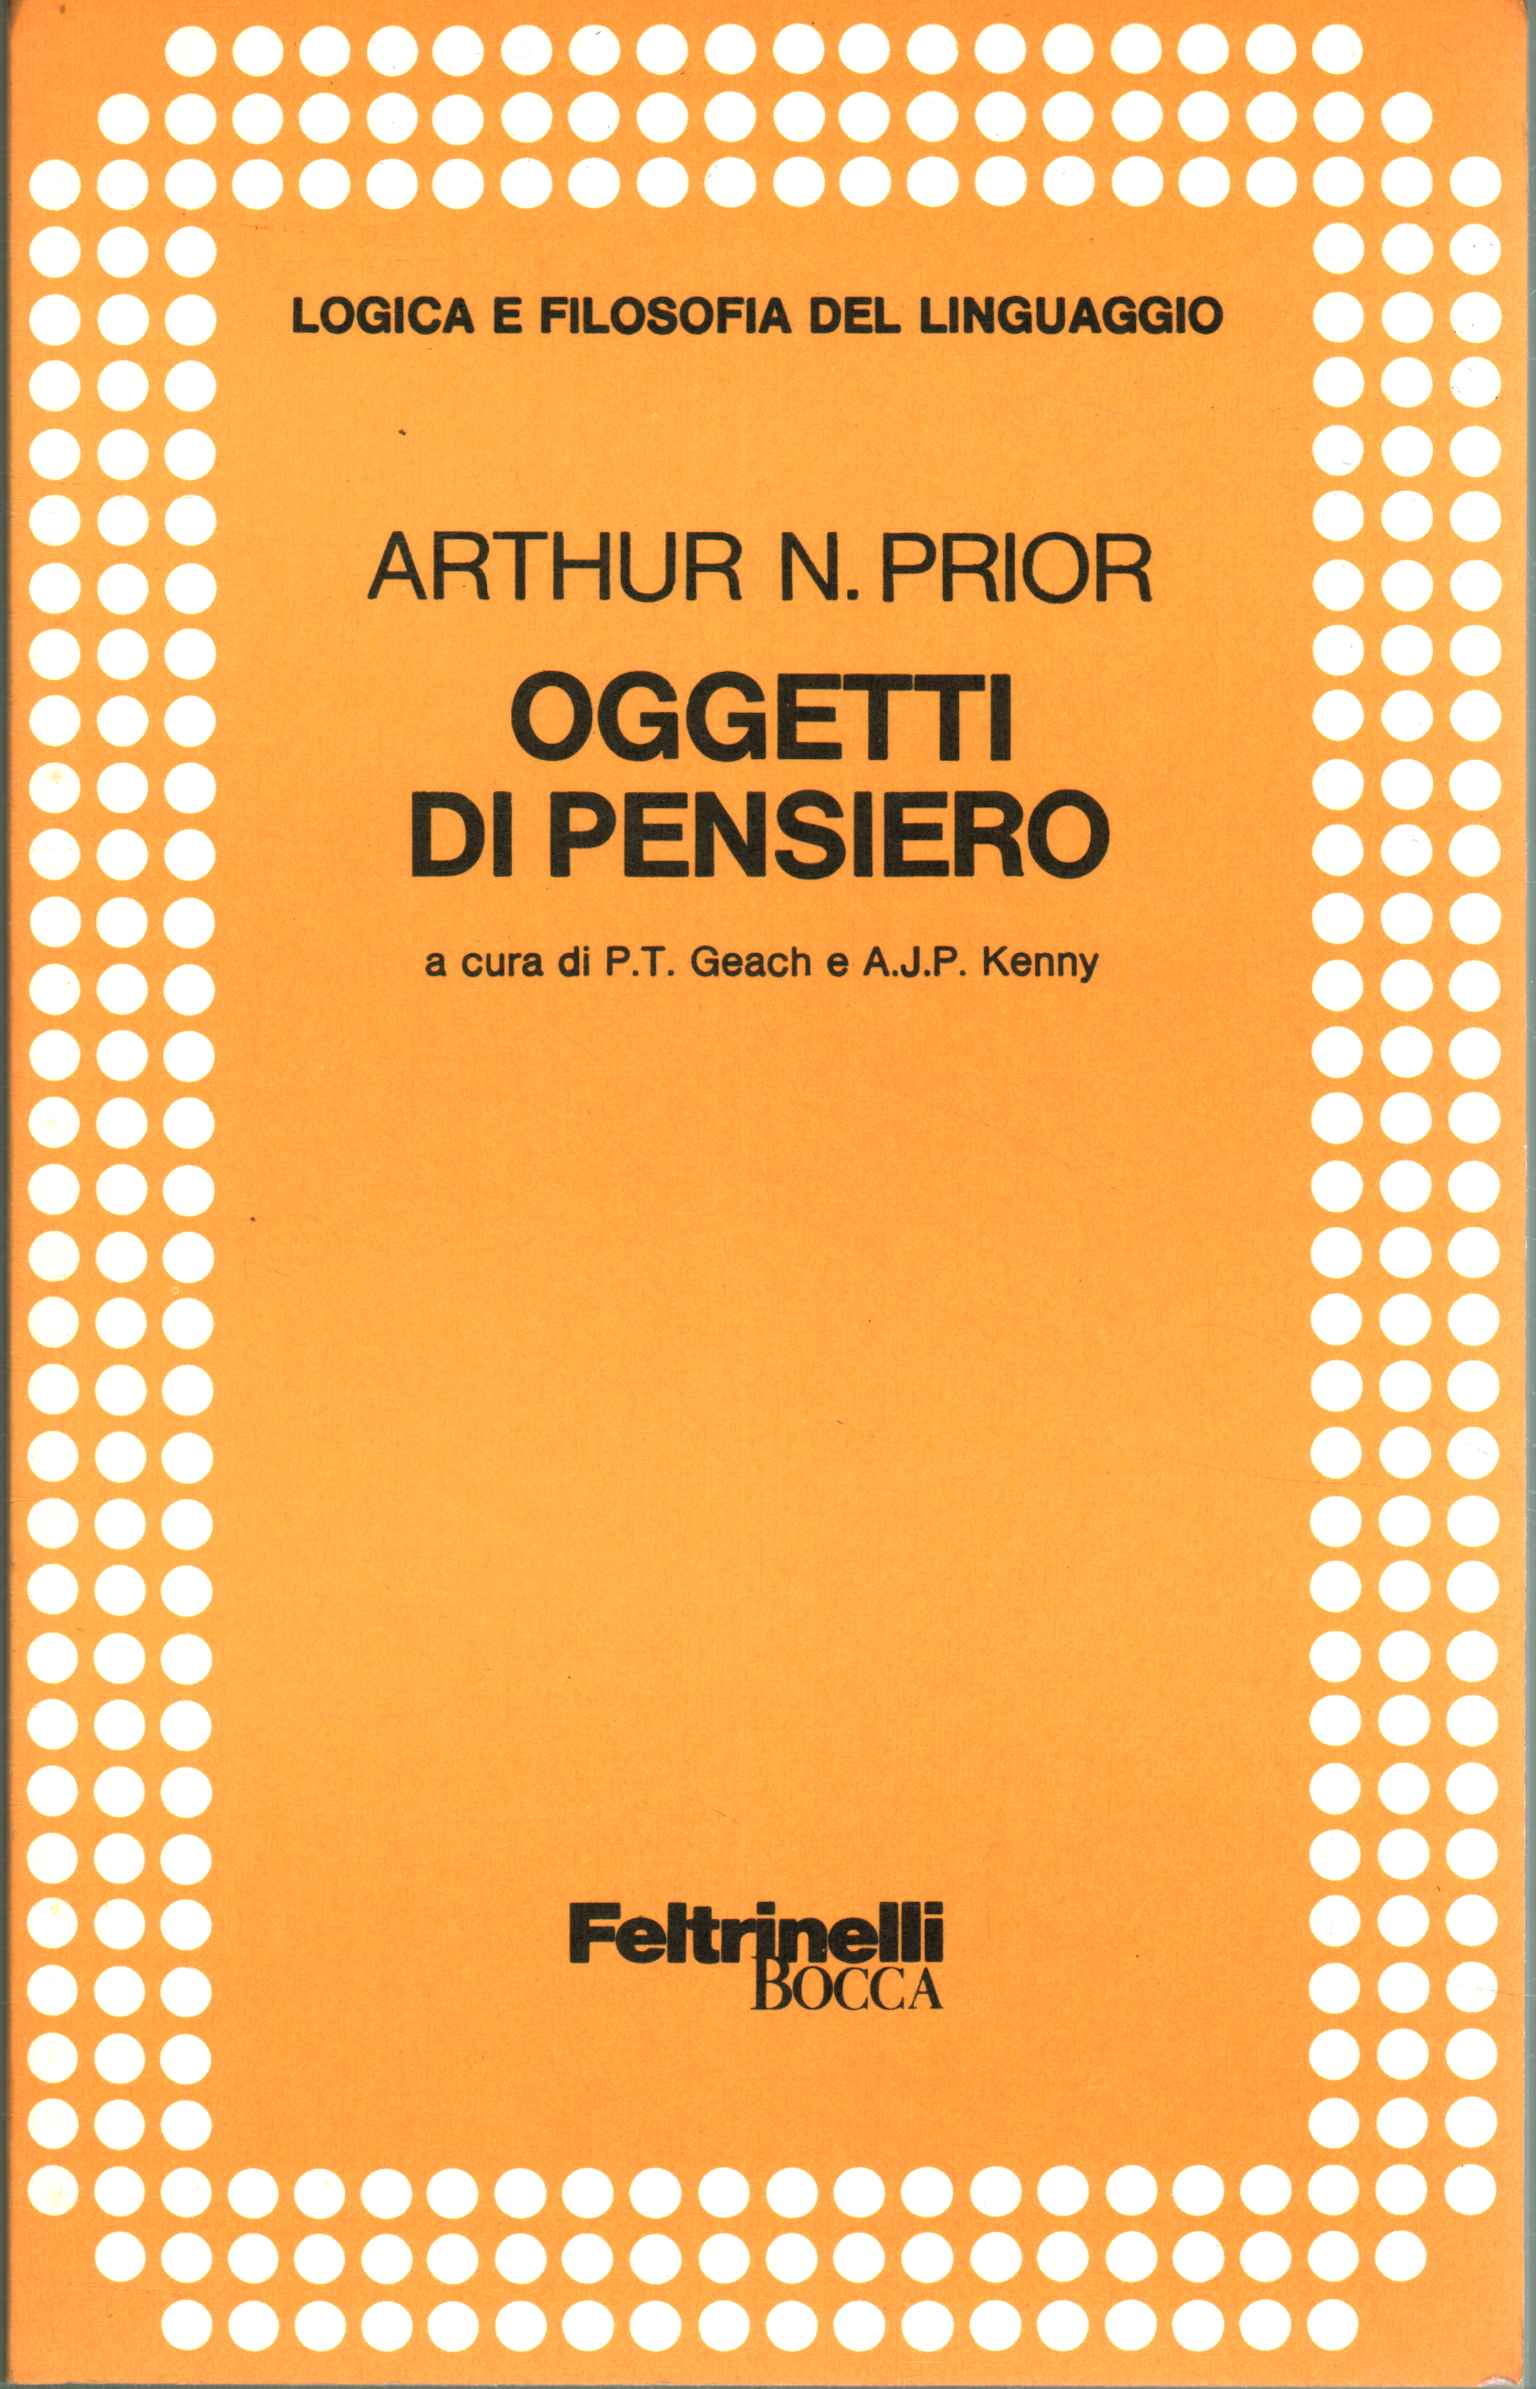 Oggetti di pensiero - Arthur N. Prior (Feltrinelli Bocca) [1981]